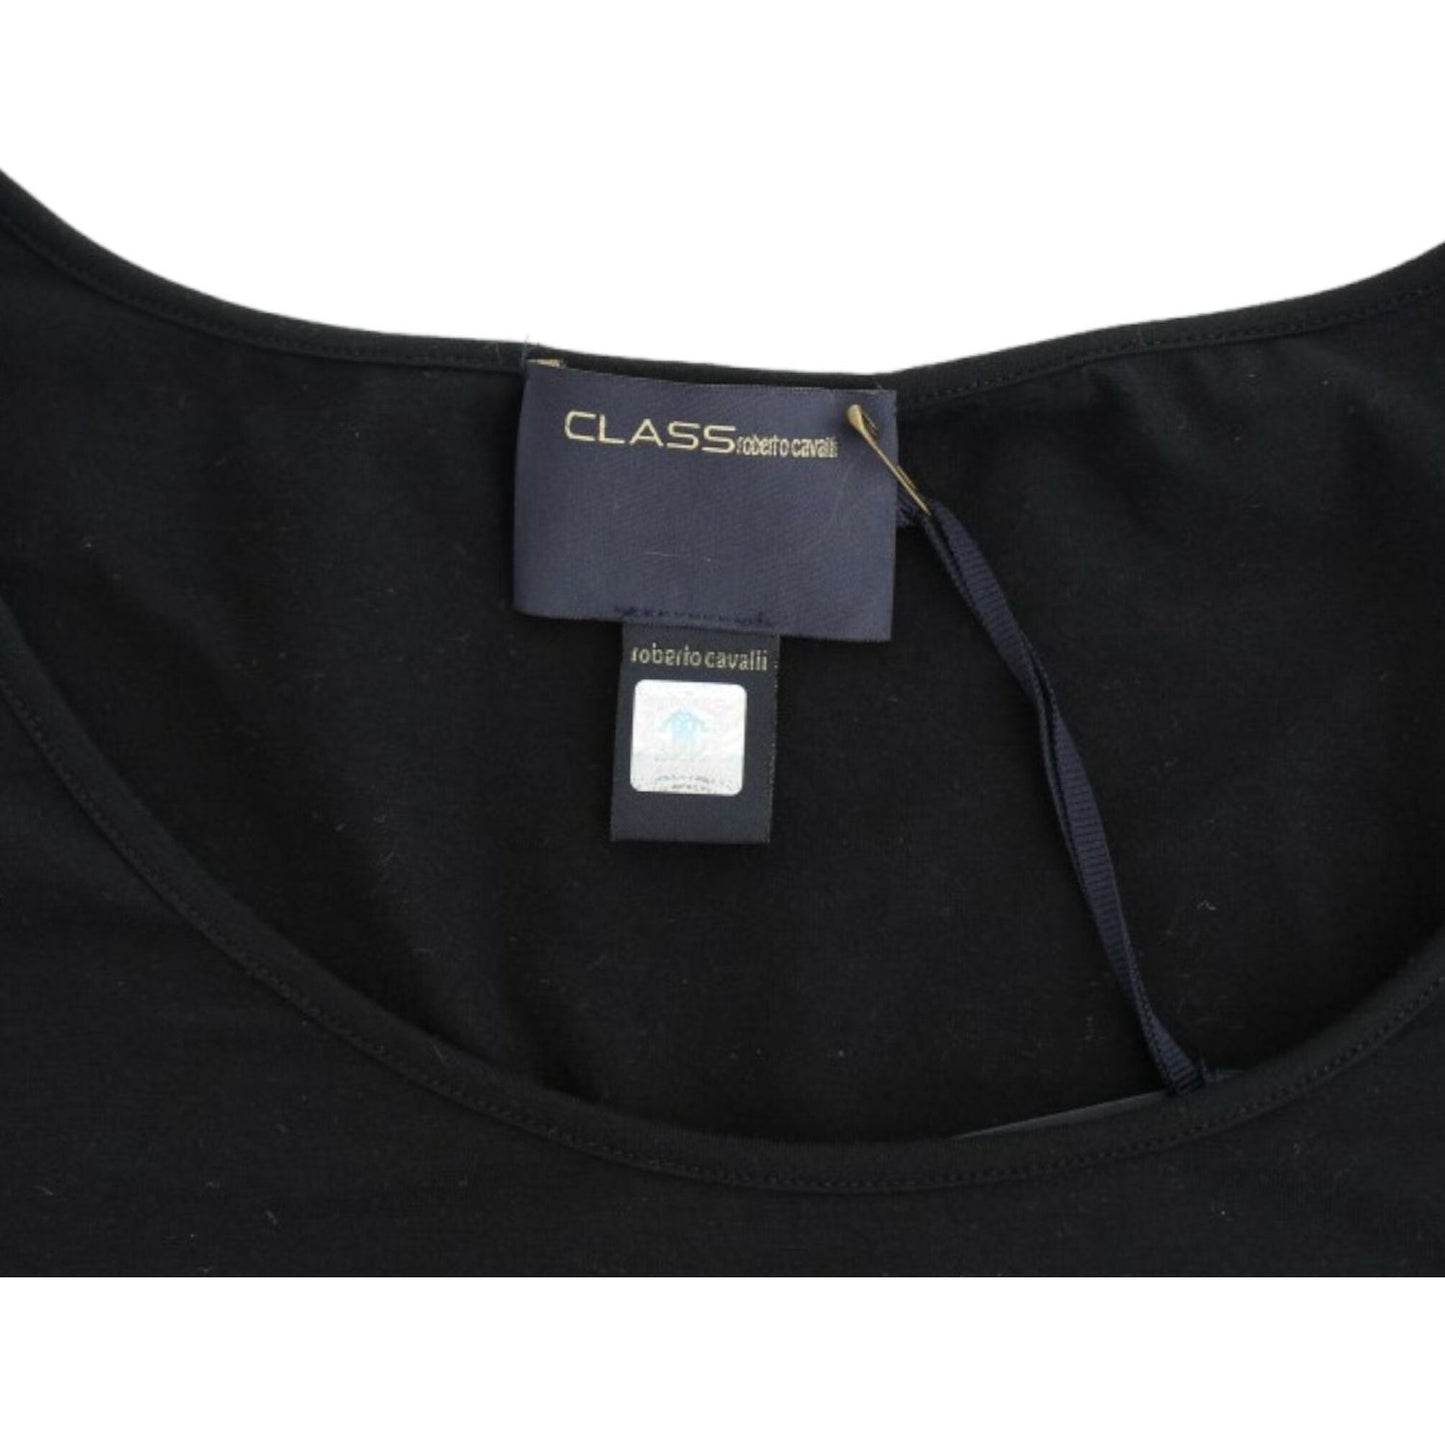 Cavalli Elegant Cap Sleeve Black Top black-cotton-top